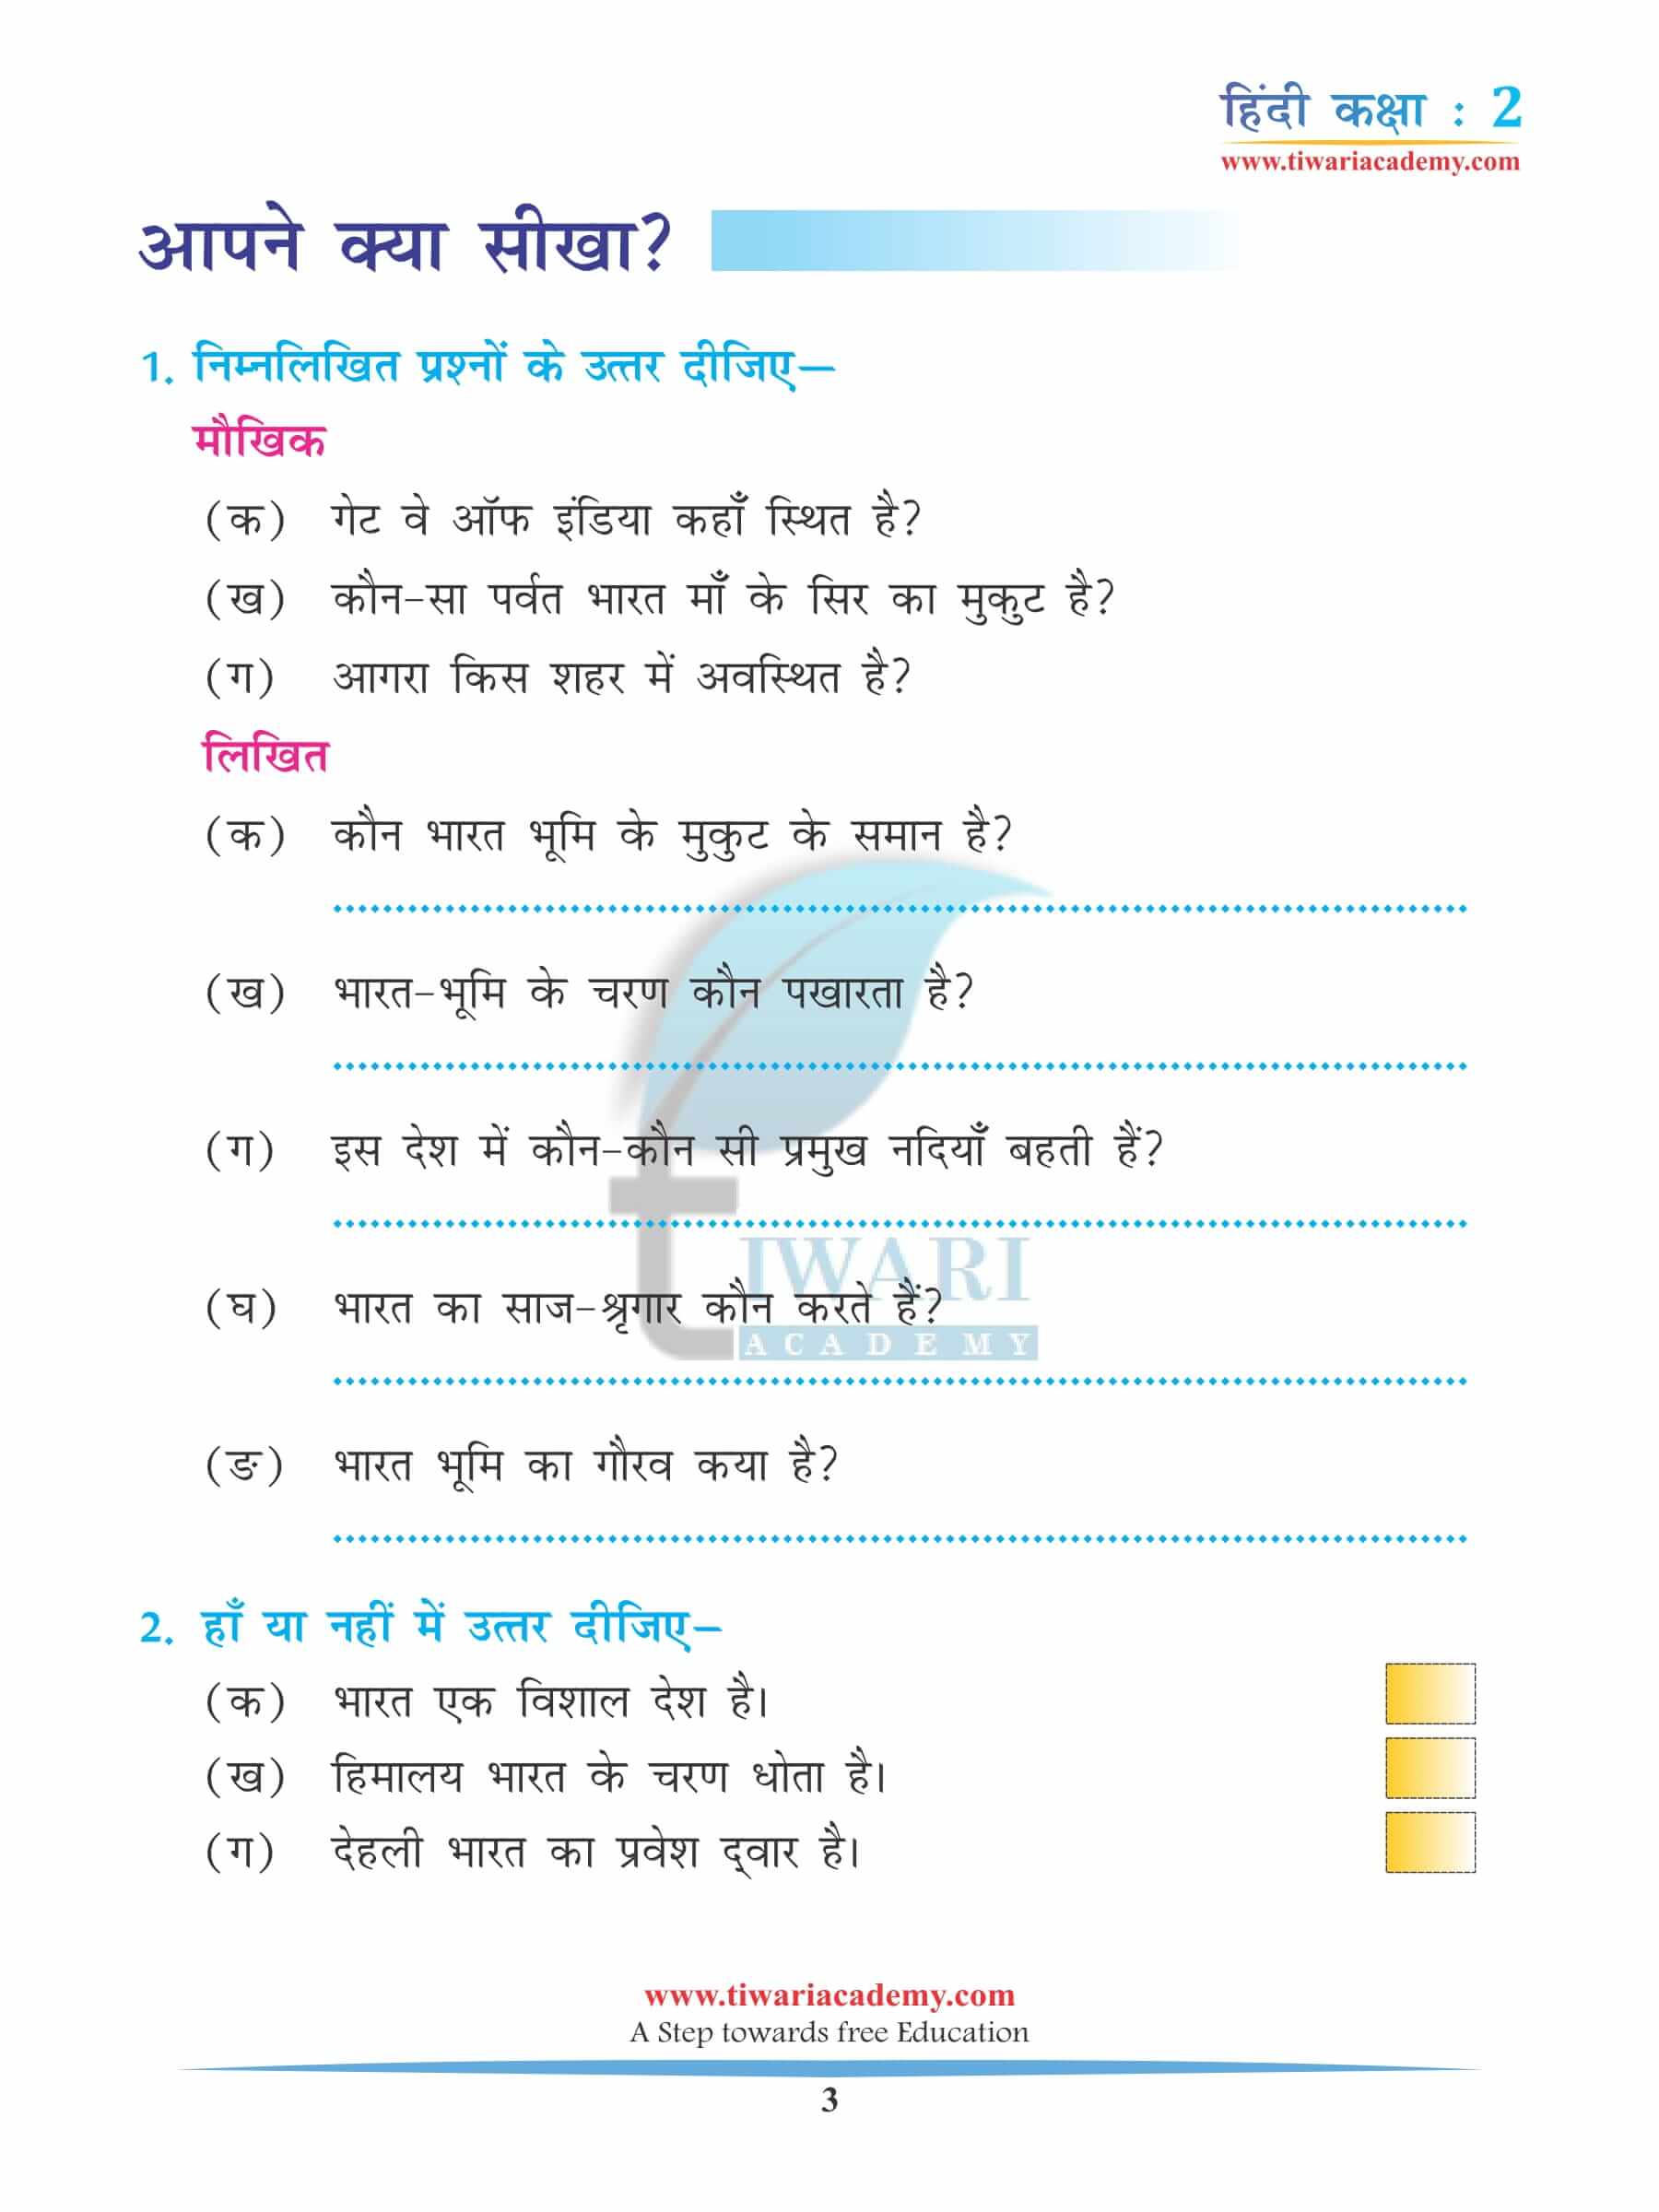 कक्षा 2 हिंदी अध्याय 7 के प्रश्न उत्तर